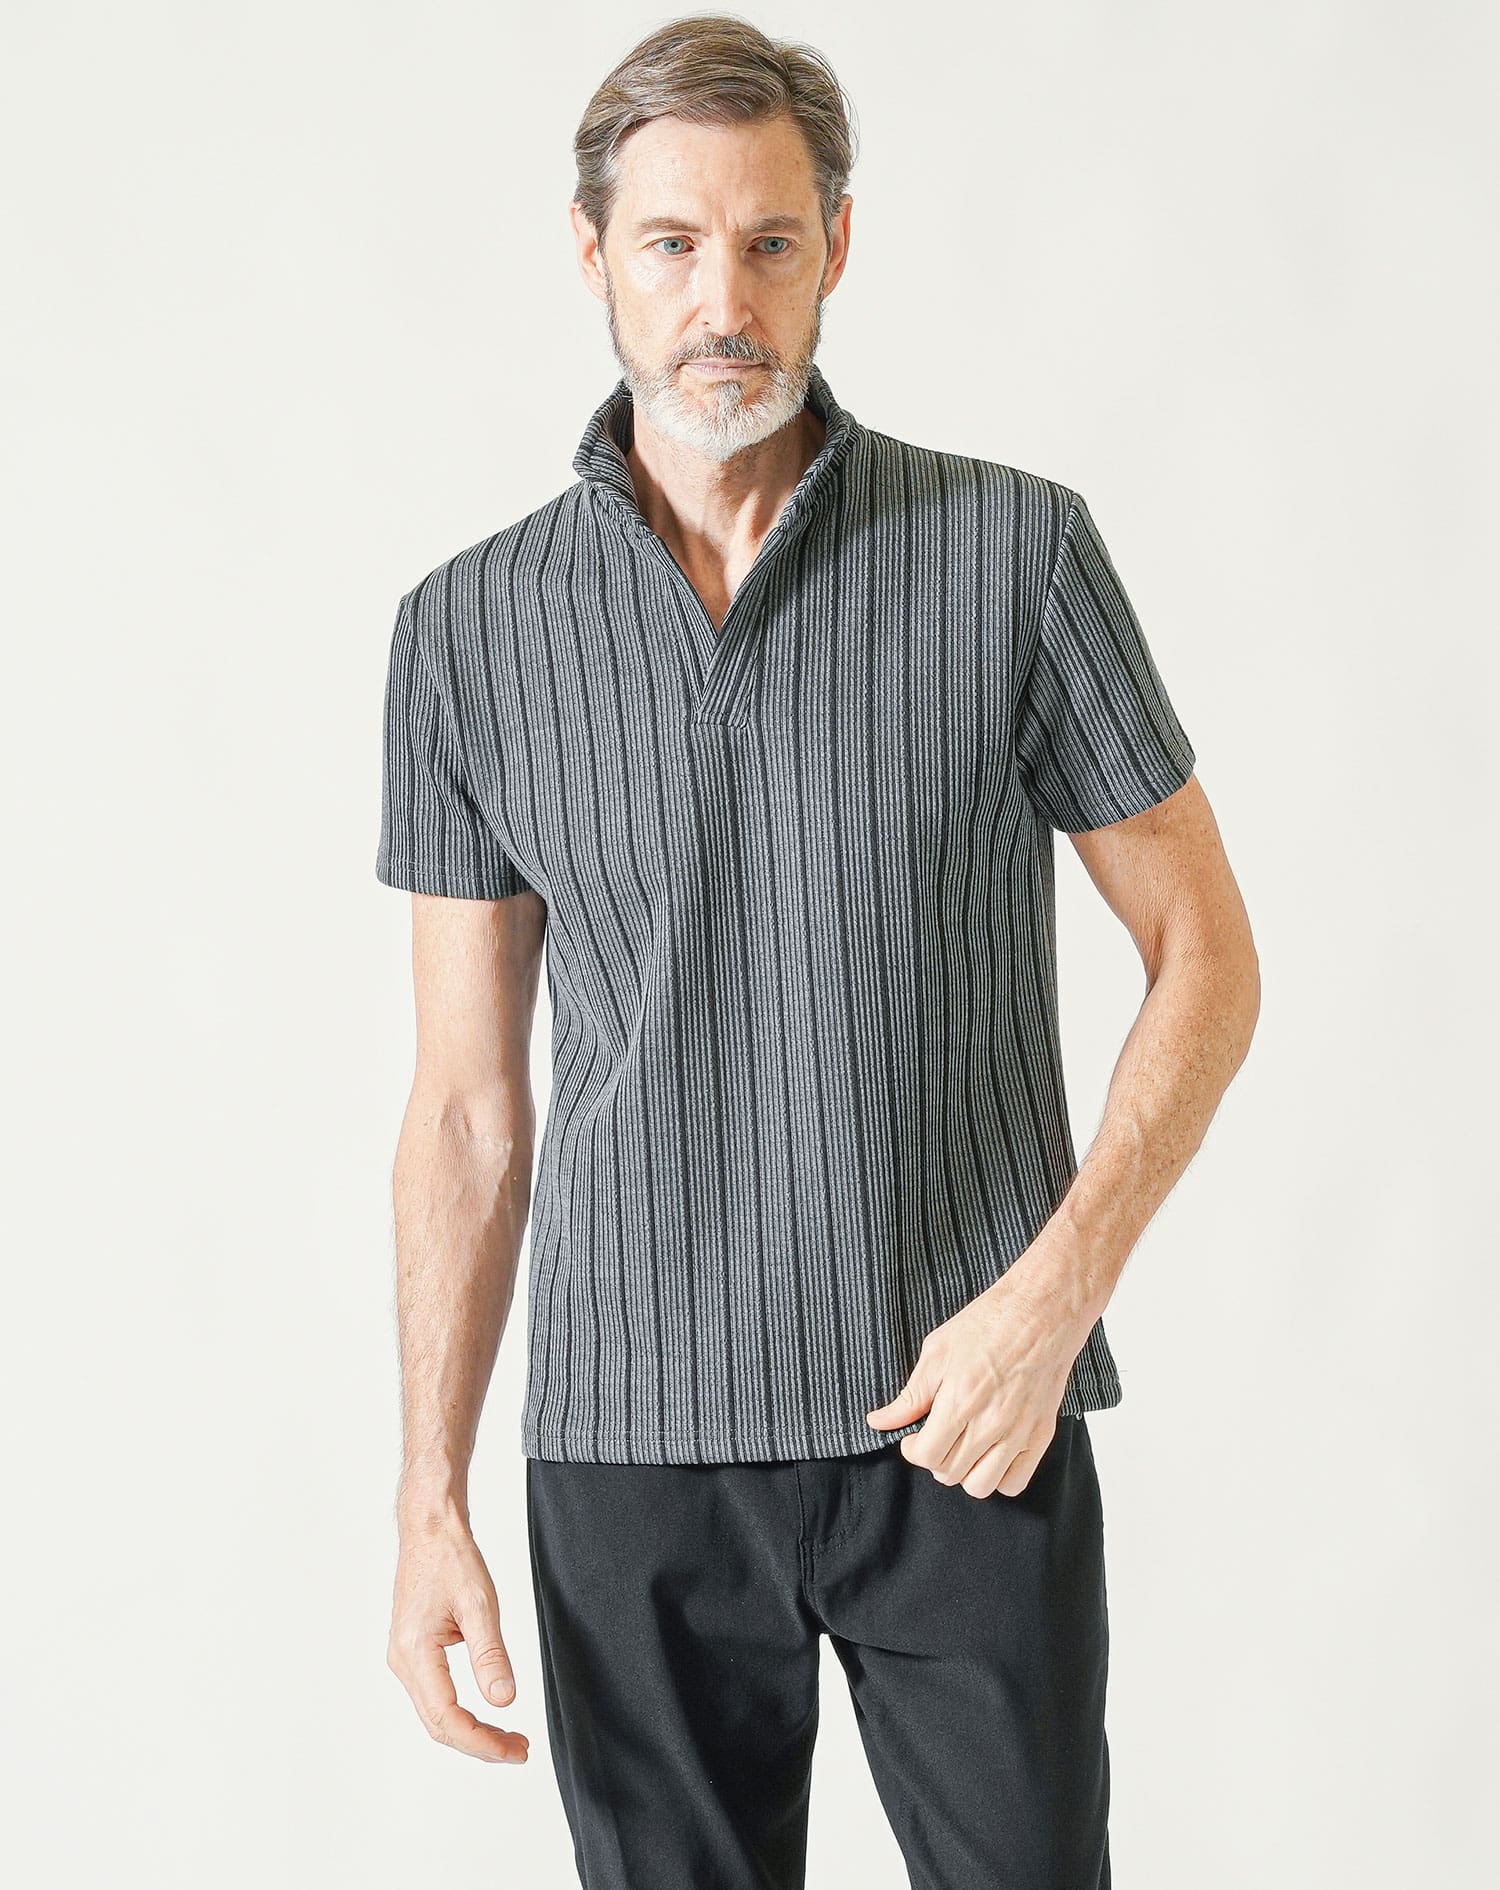 60代メンズ夏の3点コーデセット グレー半袖ポロシャツ×黒半袖VネックTシャツ×黒ストレッチアンクルチノパンツ